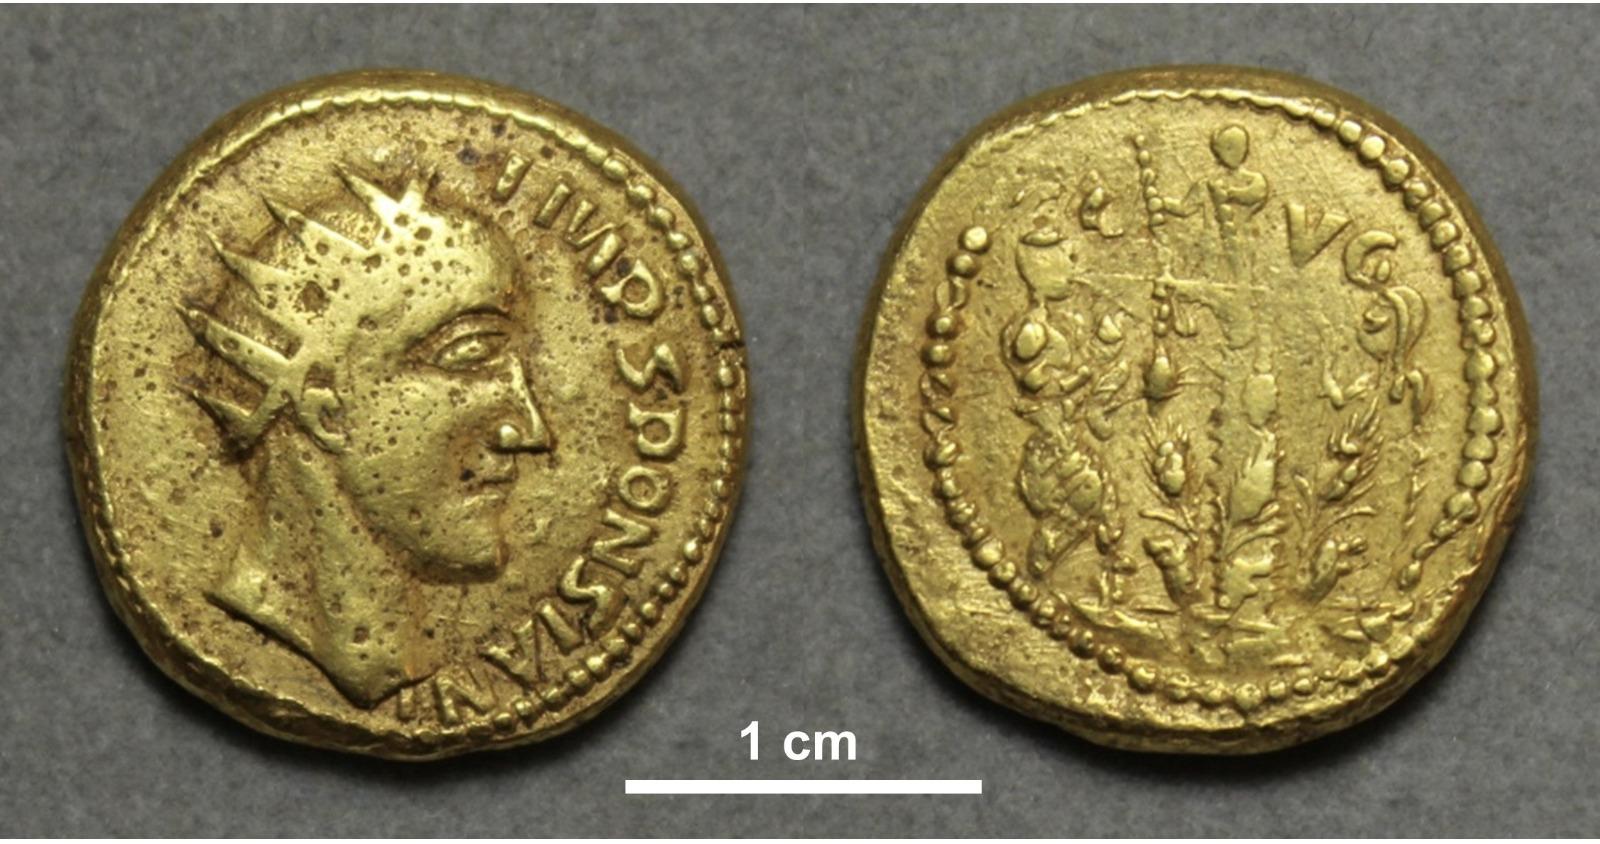 Povestea monedei de aur: considerată fals, apoi redescoperită la adevărata ei valoare